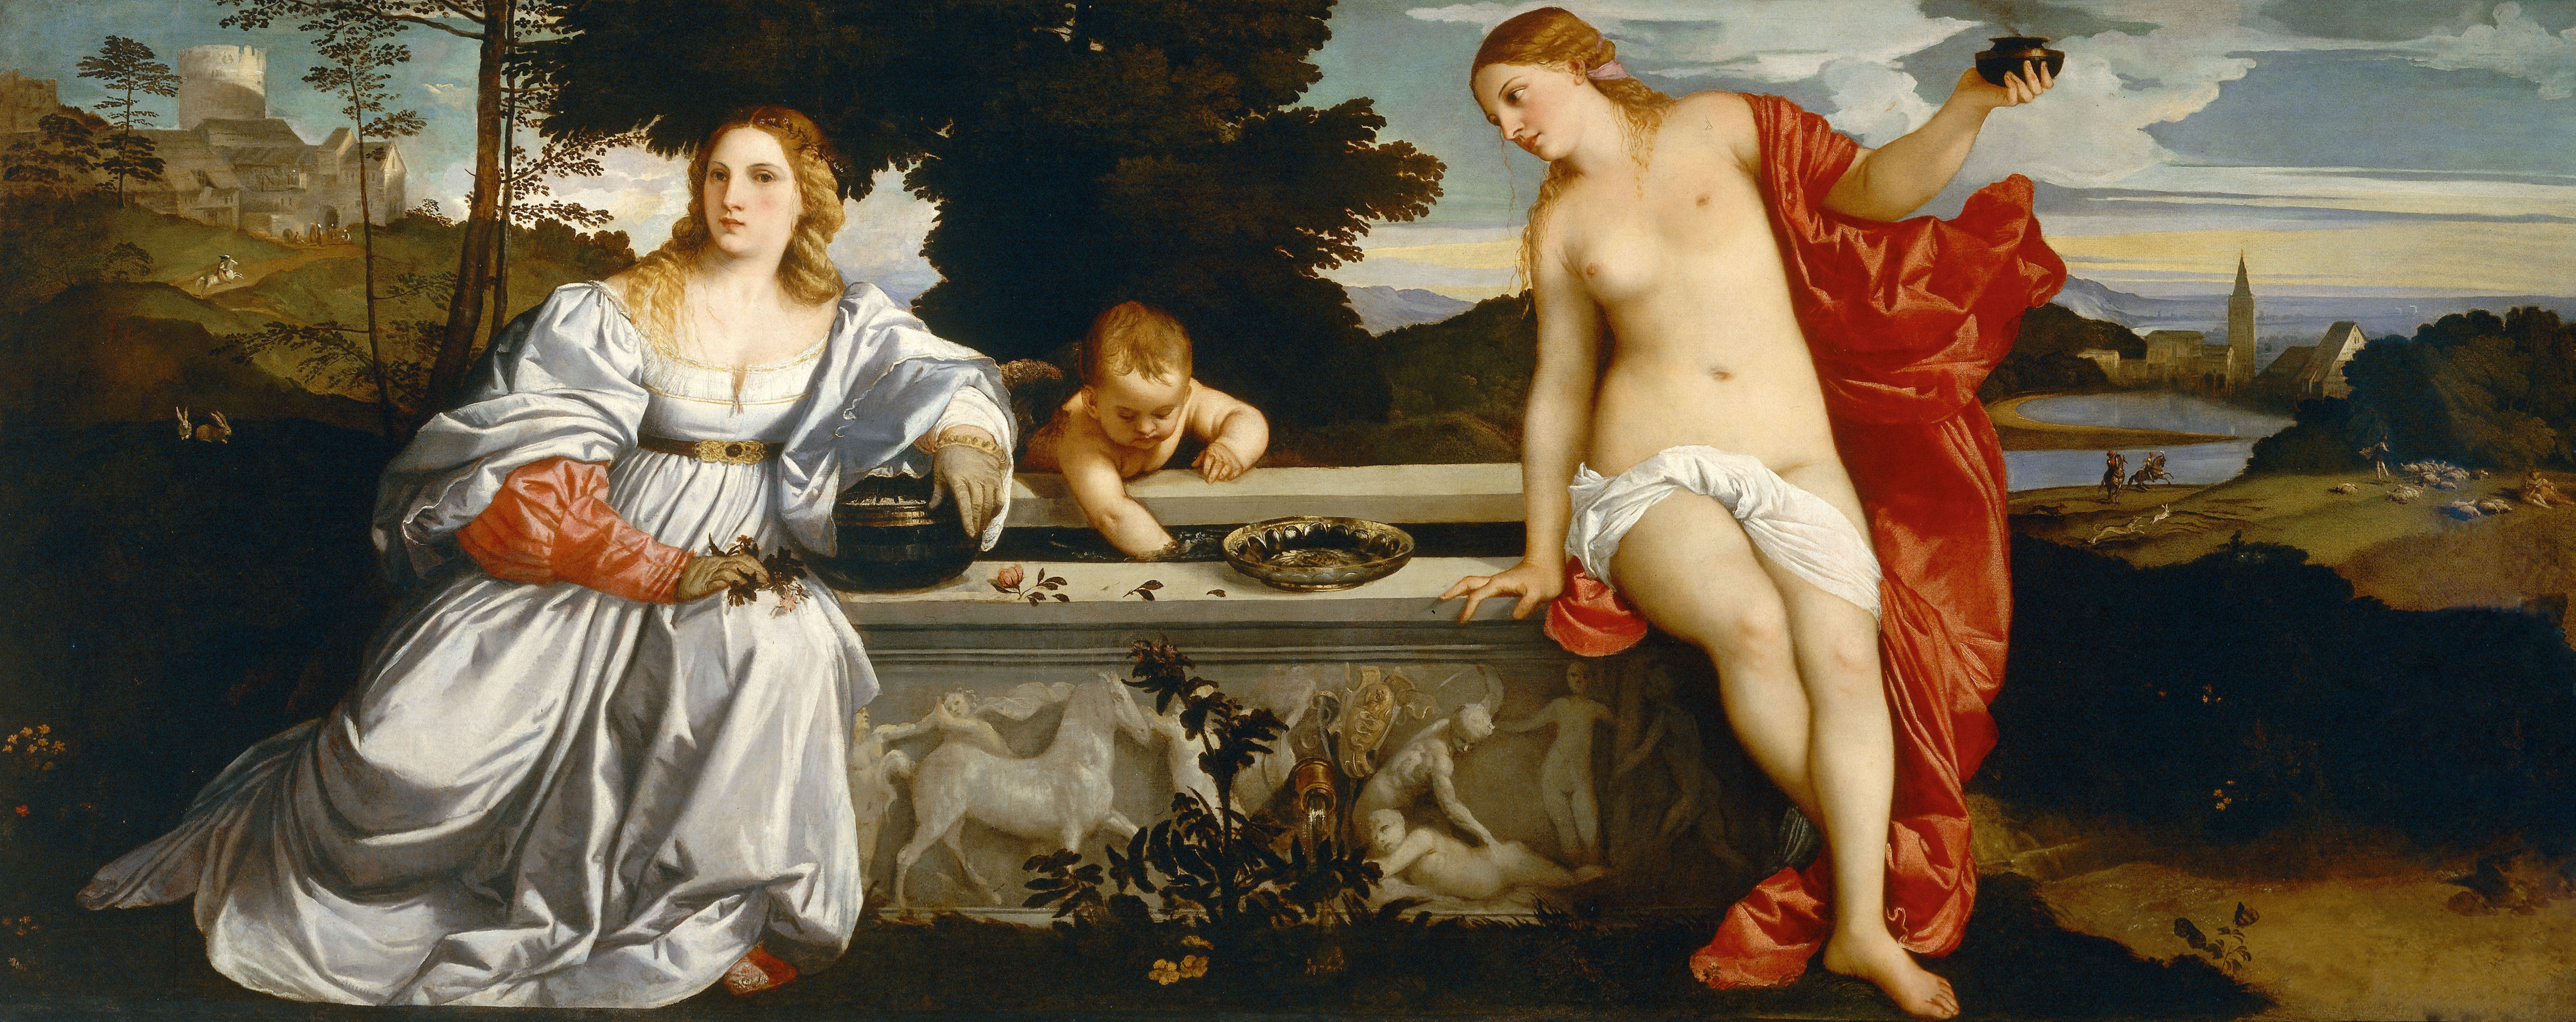 Amor Sacro y Amor Profano by Titian